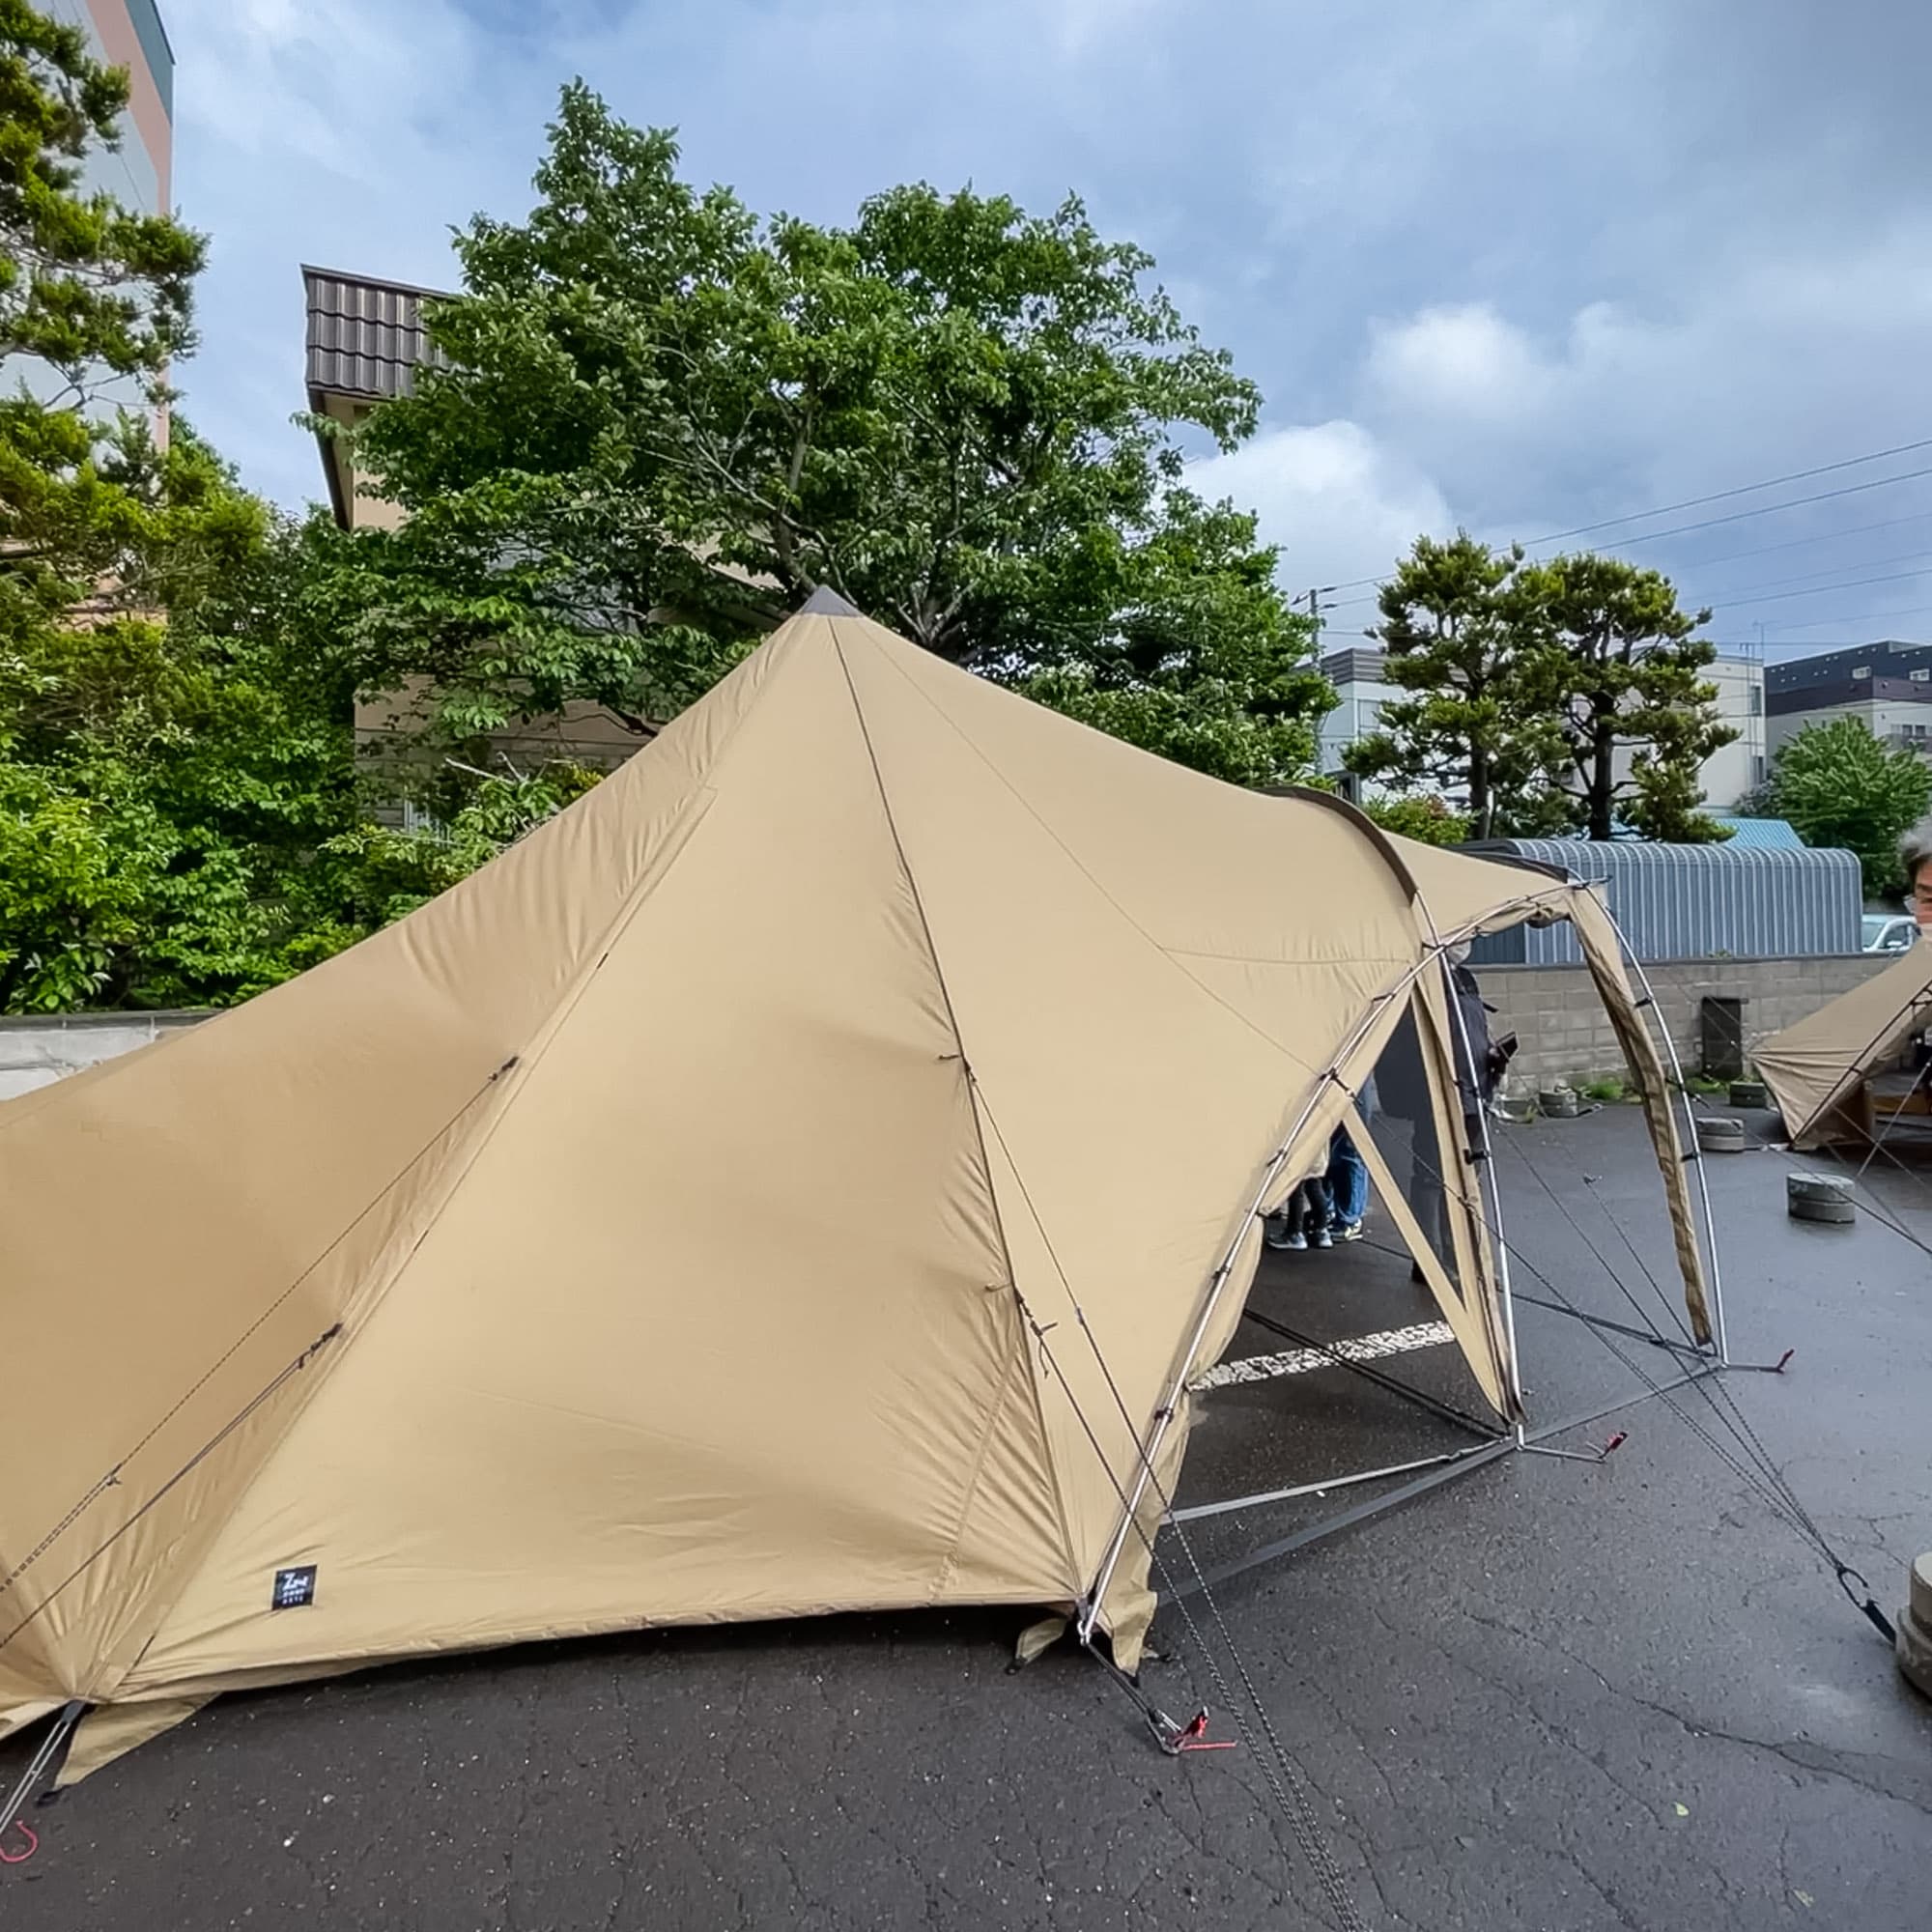 大人気キャンプメーカー「ゼインアーツ」の新作テントLOLOを見に秀岳荘へ行ってきた